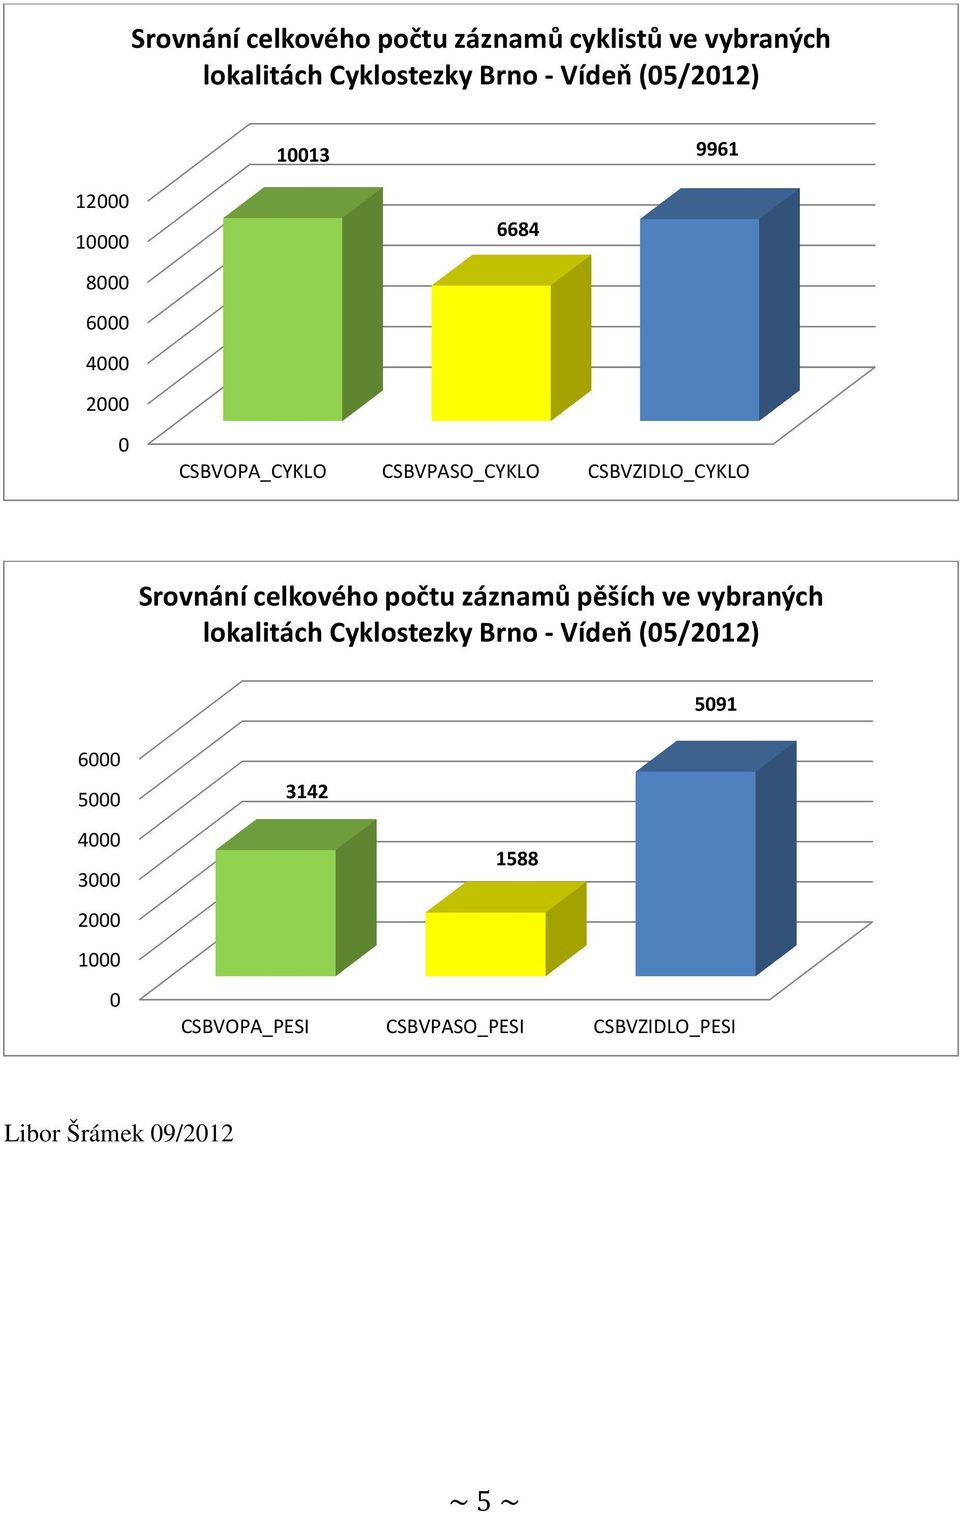 Srovnání celkového počtu záznamů pěších ve vybraných lokalitách Cyklostezky Brno